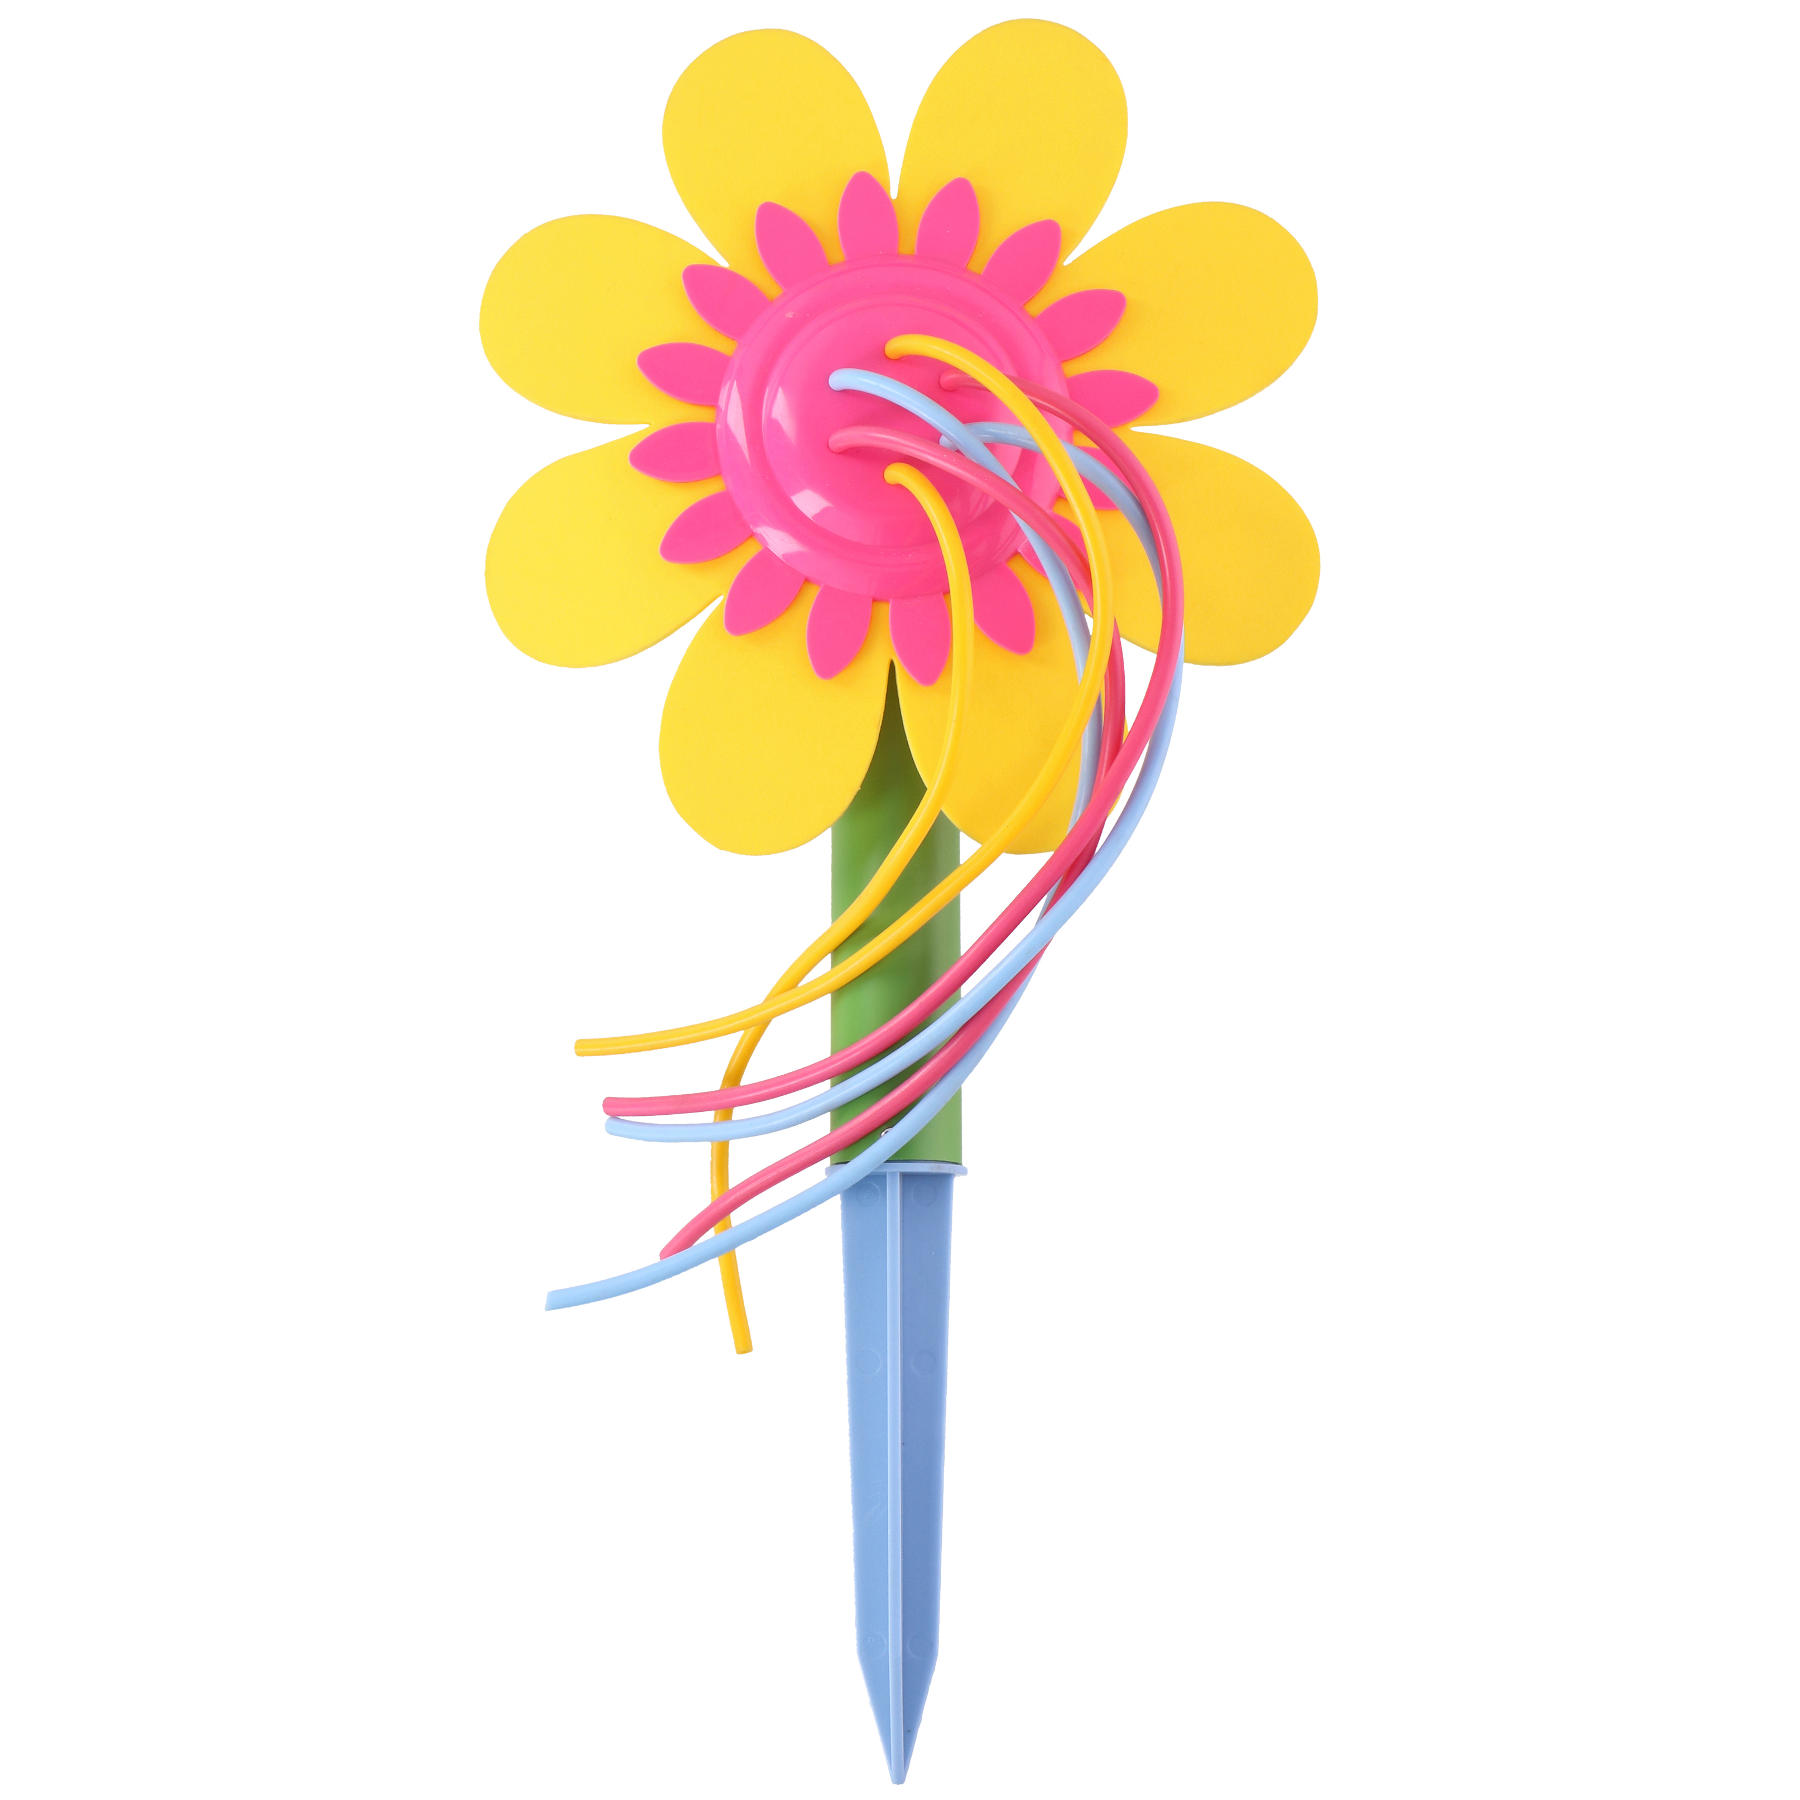 Wassersprinkler Spritzblume verrückte Blume 70 cm Dusche für Kinder NEU 265624 